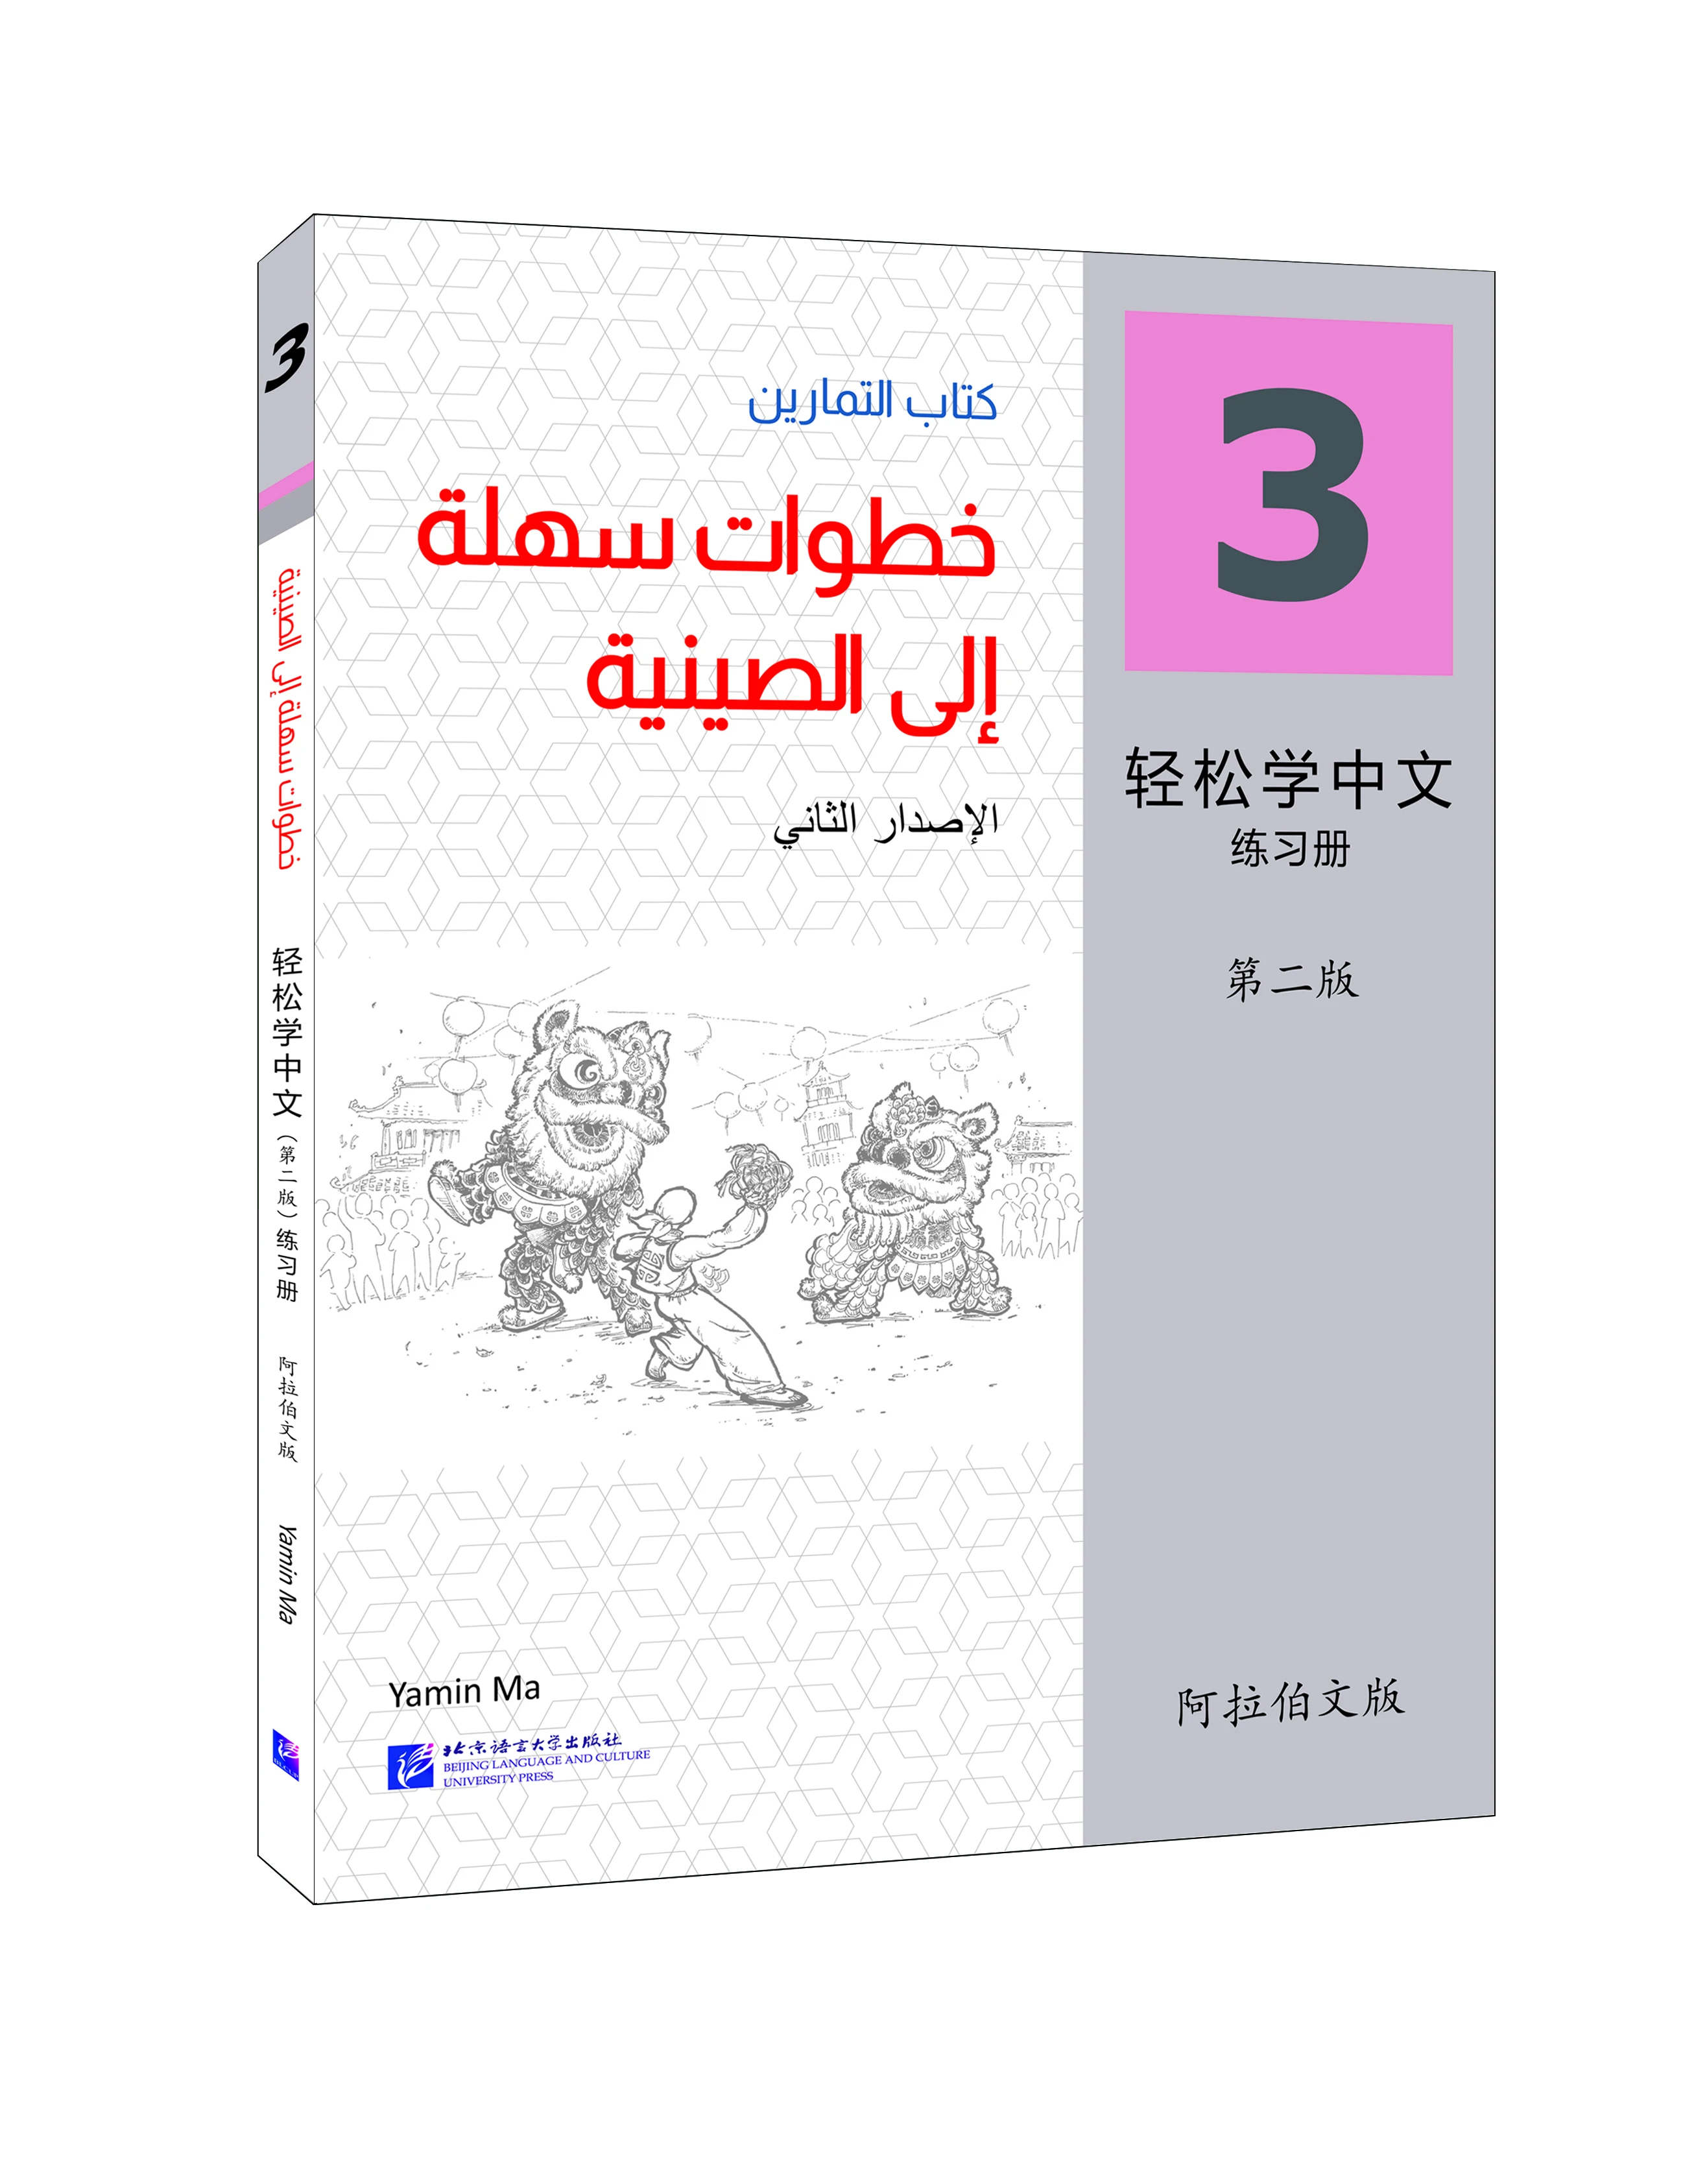 

Учебник для китайского обучения (2-е издание) (арабское издание) 3